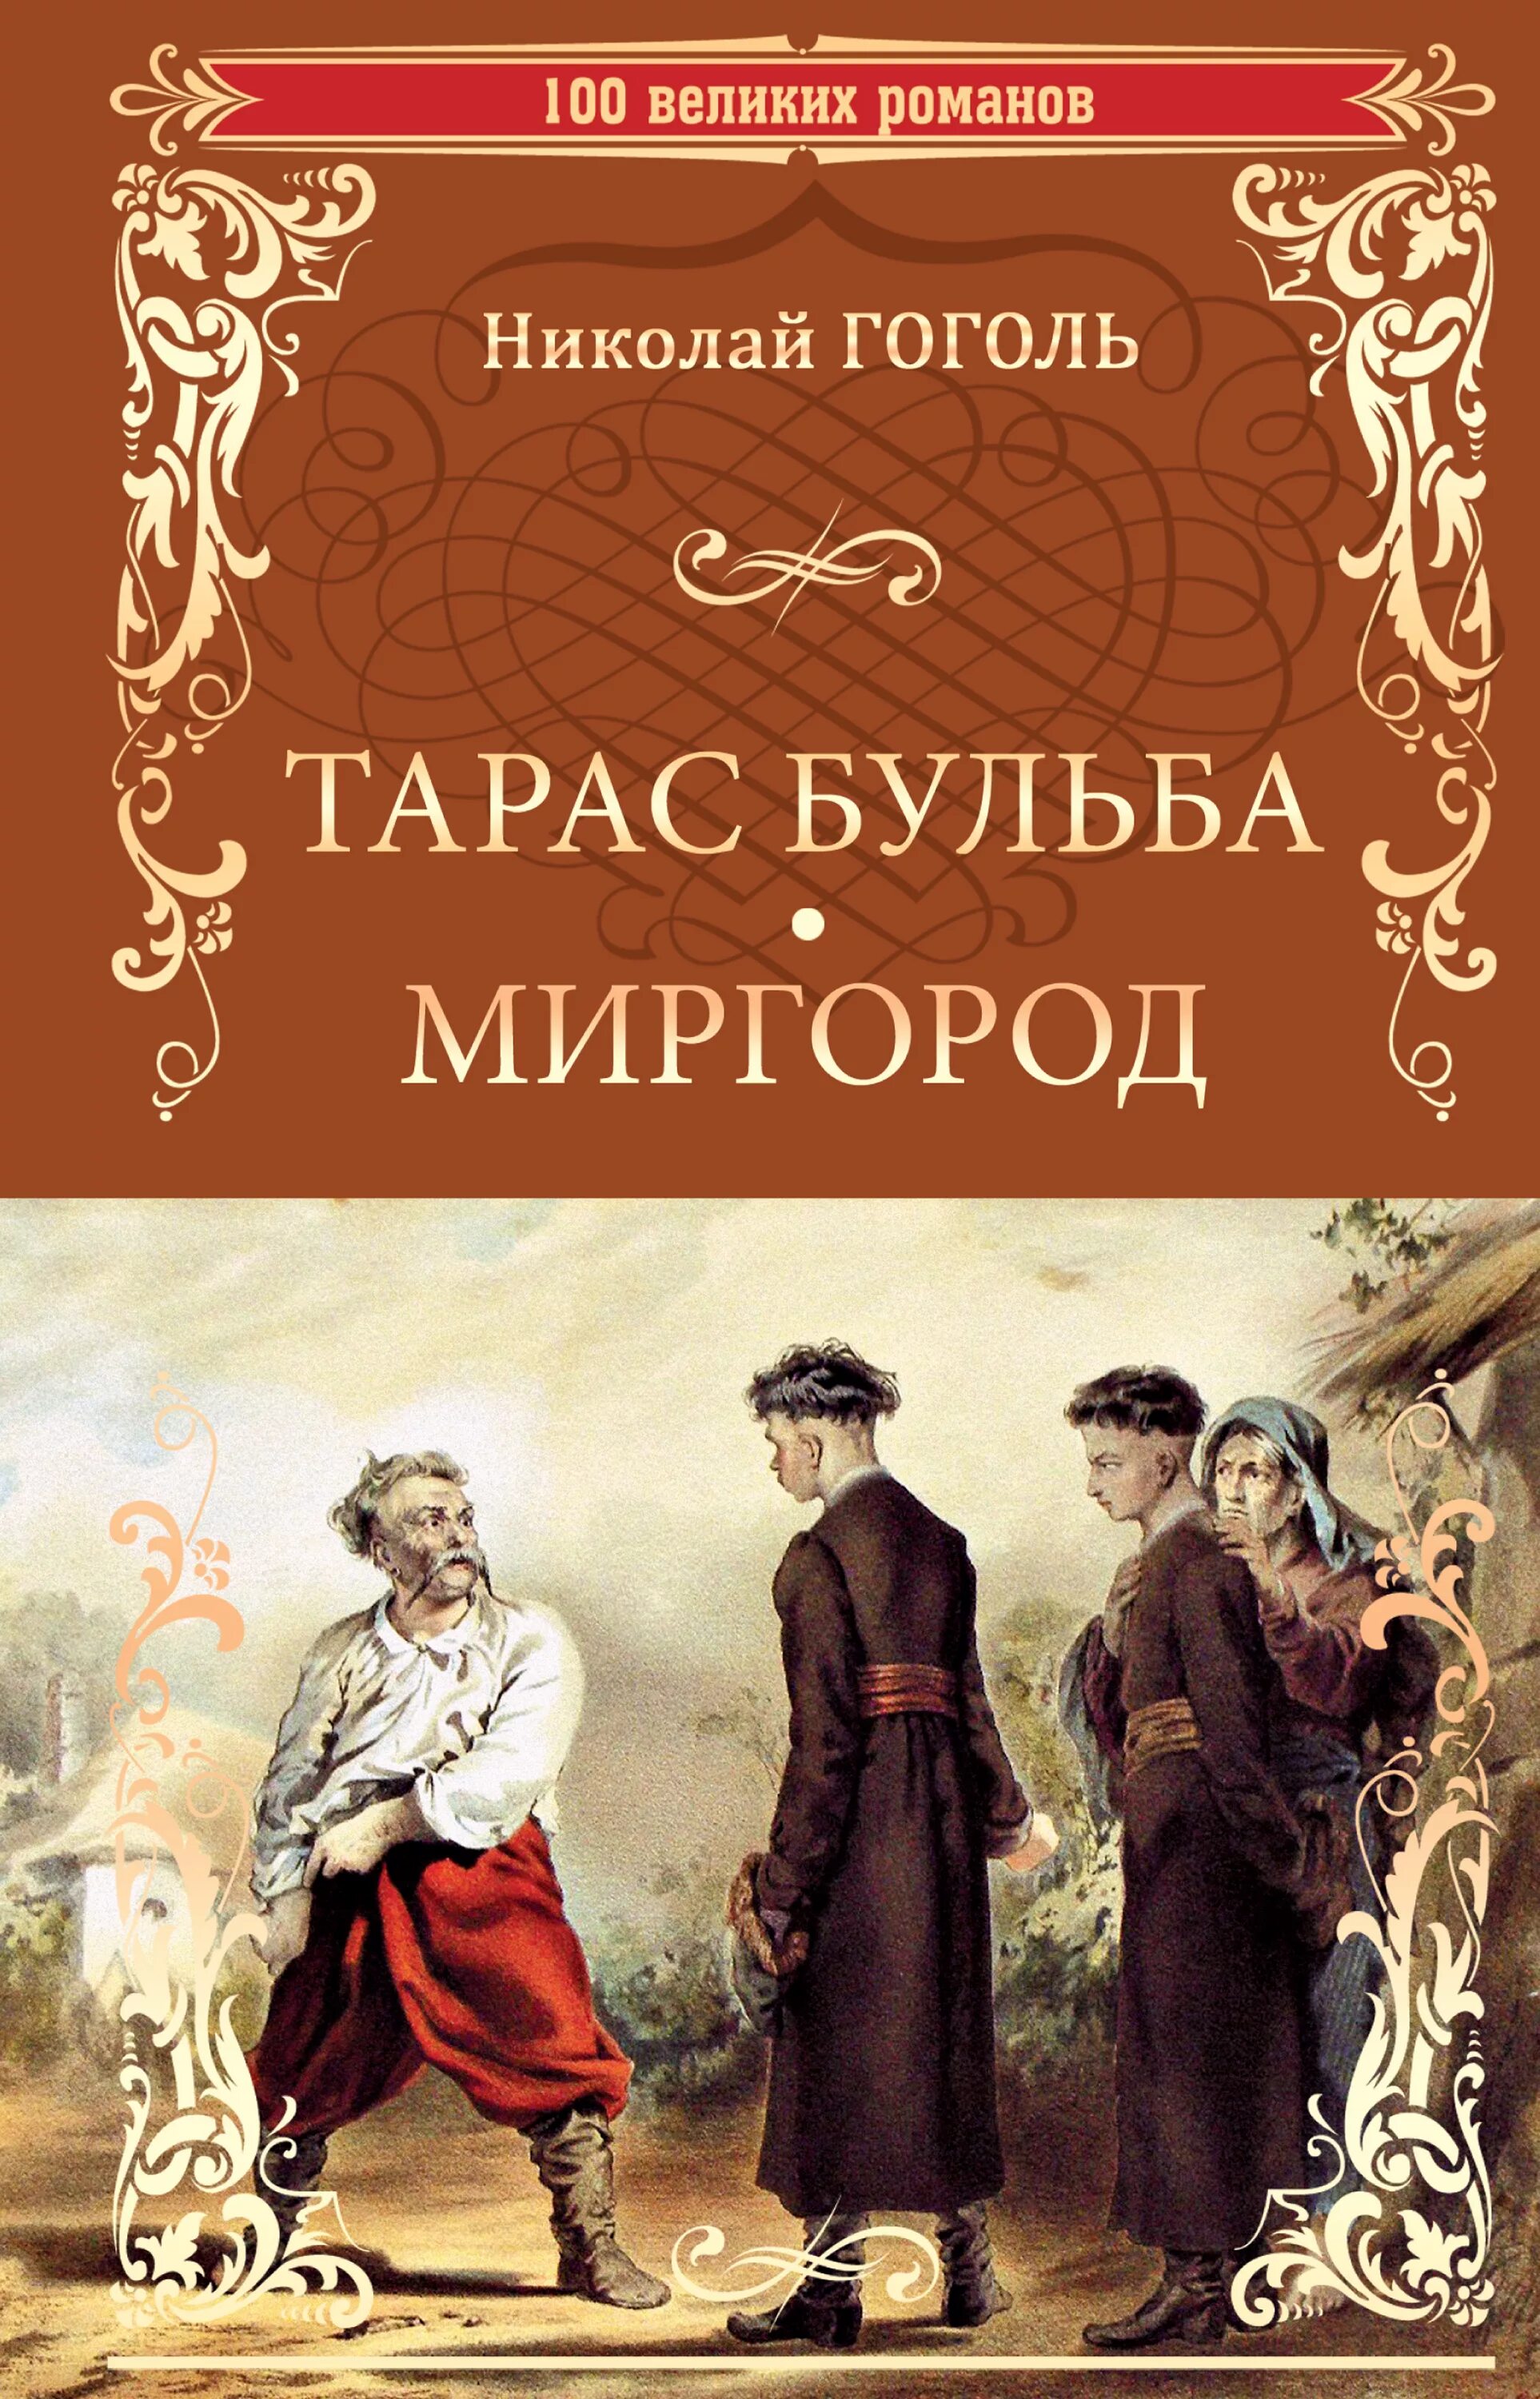 Книга Гоголь сборник повестей Миргород.